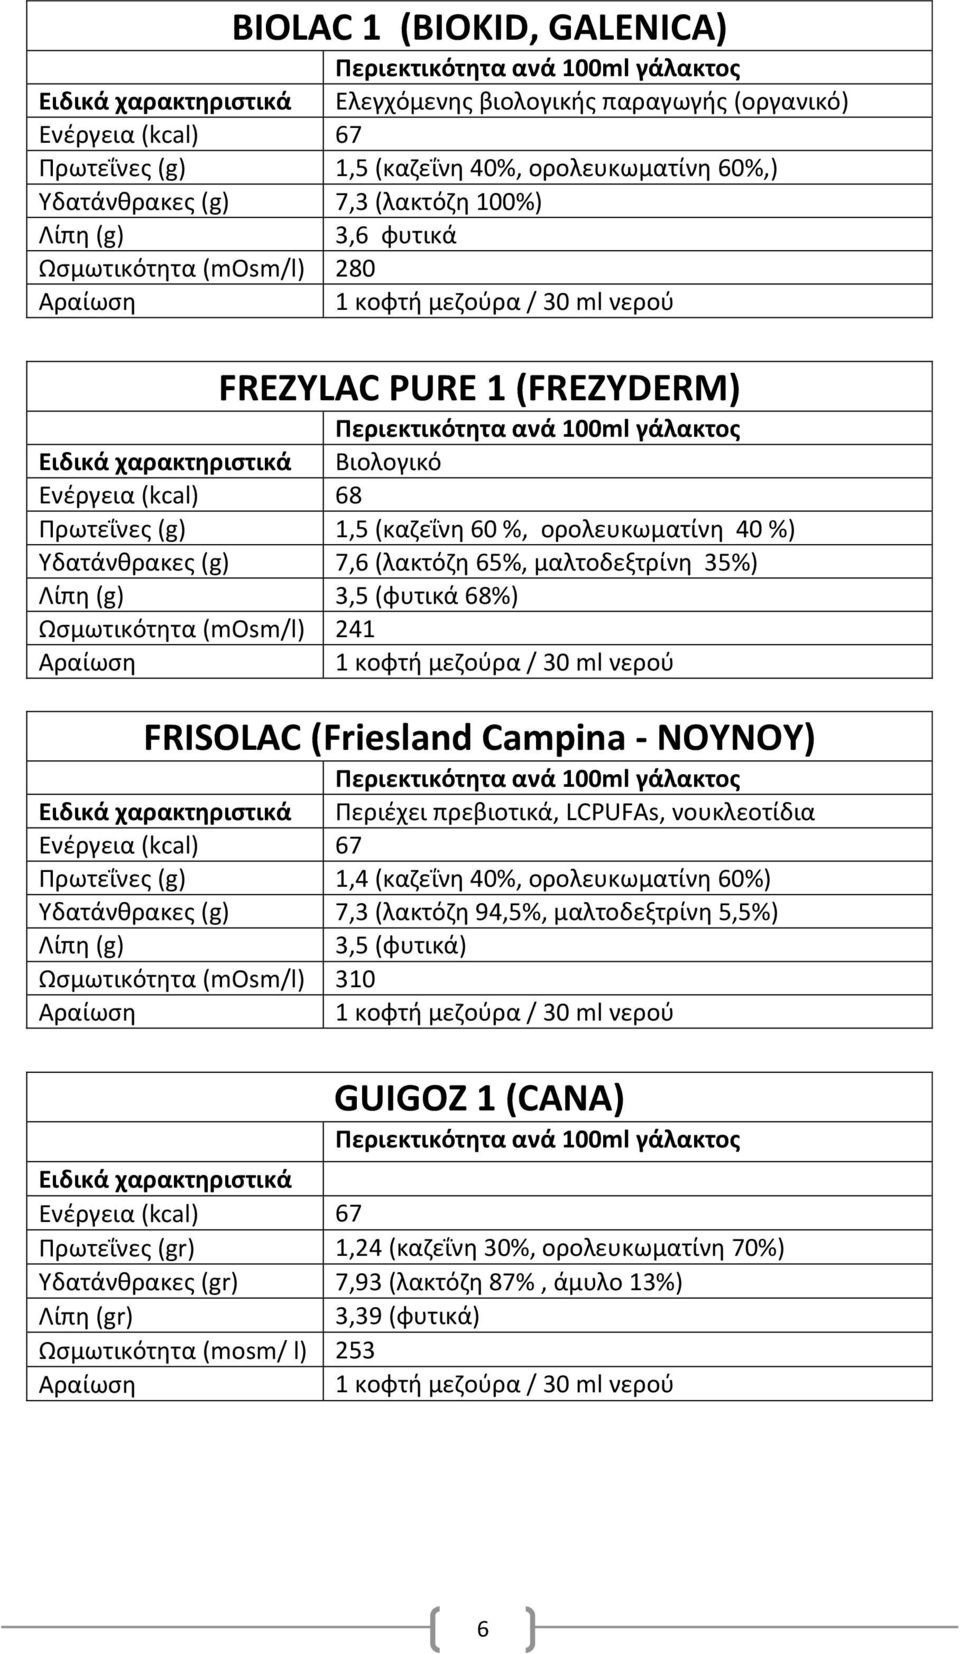 (φυτικά 68%) Ωςμωτικότθτα (mosm/l) 241 FRISOLAC (Friesland Campina - NOYNOY) Περιζχει πρεβιοτικά, LCPUFAs, νουκλεοτίδια Ενζργεια (kcal) 67 Πρωτεΐνεσ (g) 1,4 (καηεΐνθ 40%, ορολευκωματίνθ 60%)